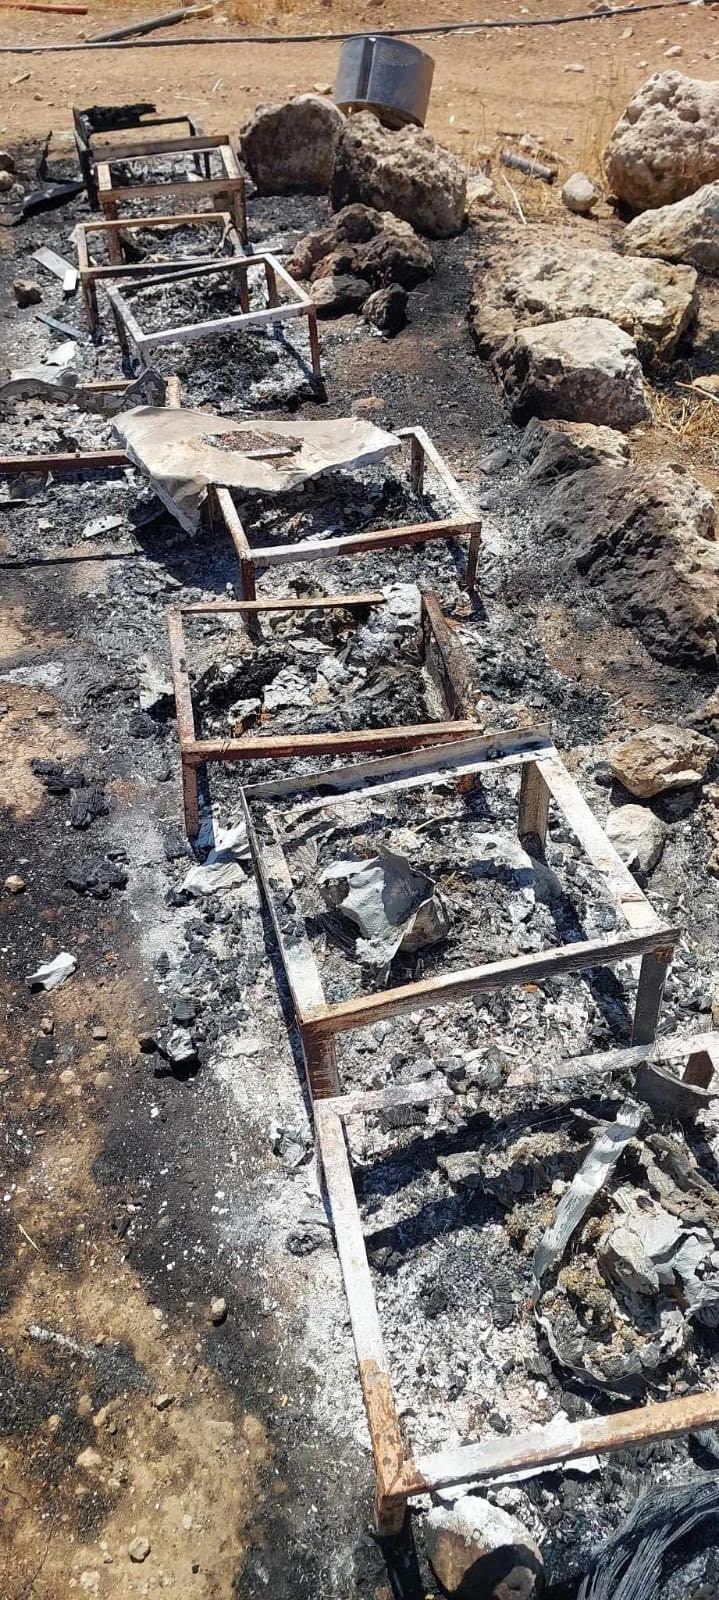 Las colmenas de abejas quemadas en la granja de Salah Awwad